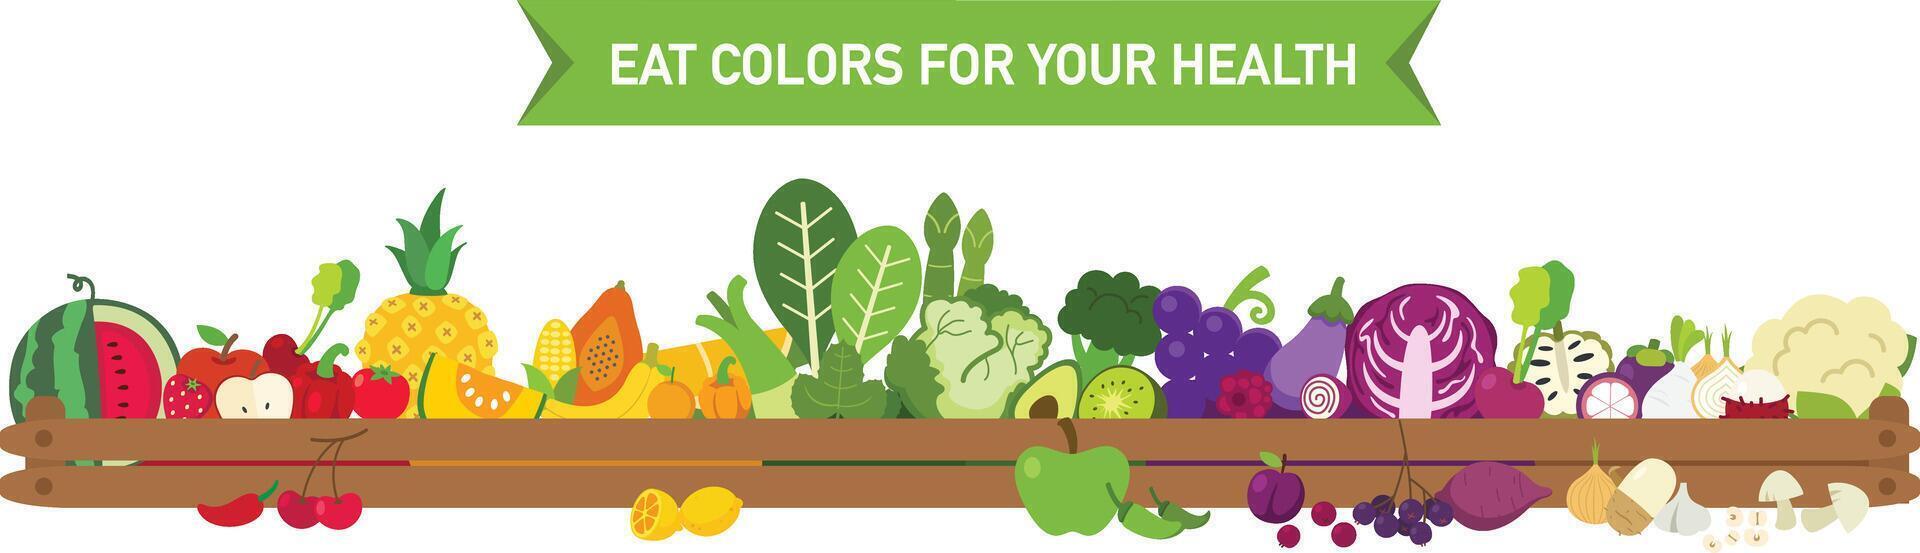 comer cores para seu saúde, comer uma arco Iris do frutas e legumes ilustração vetor